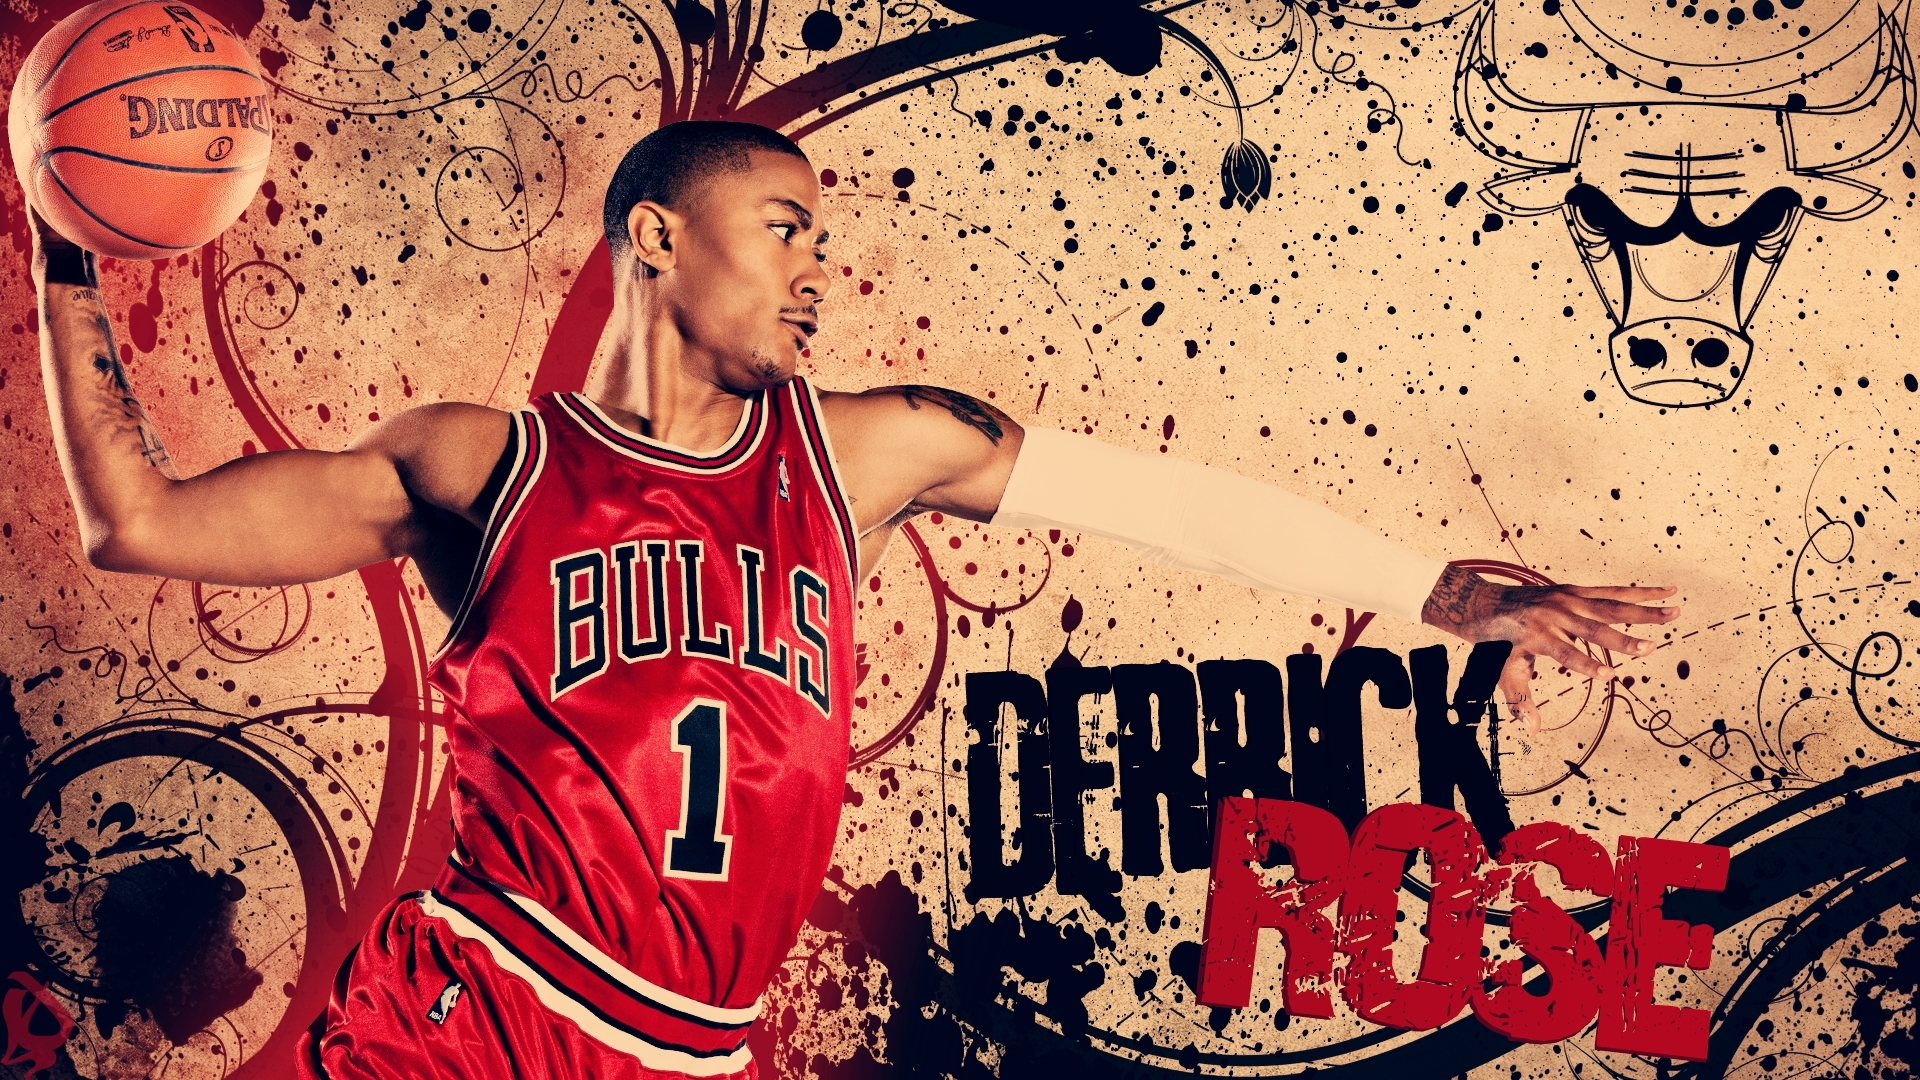 basketball, sports, chicago bulls Image for desktop